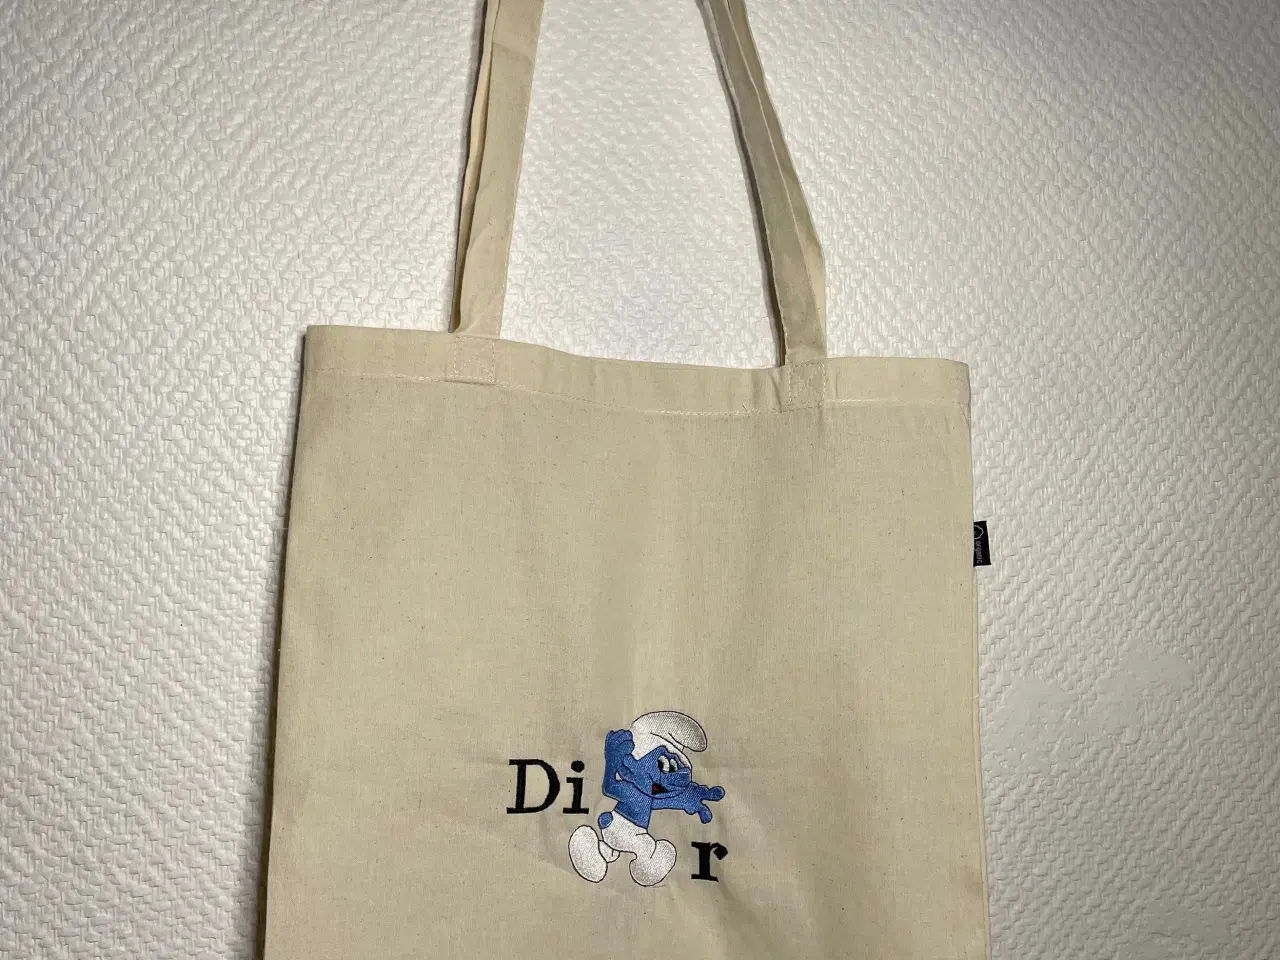 Billede 1 - Økologisk taske, med smølfebroderi med Dior;)